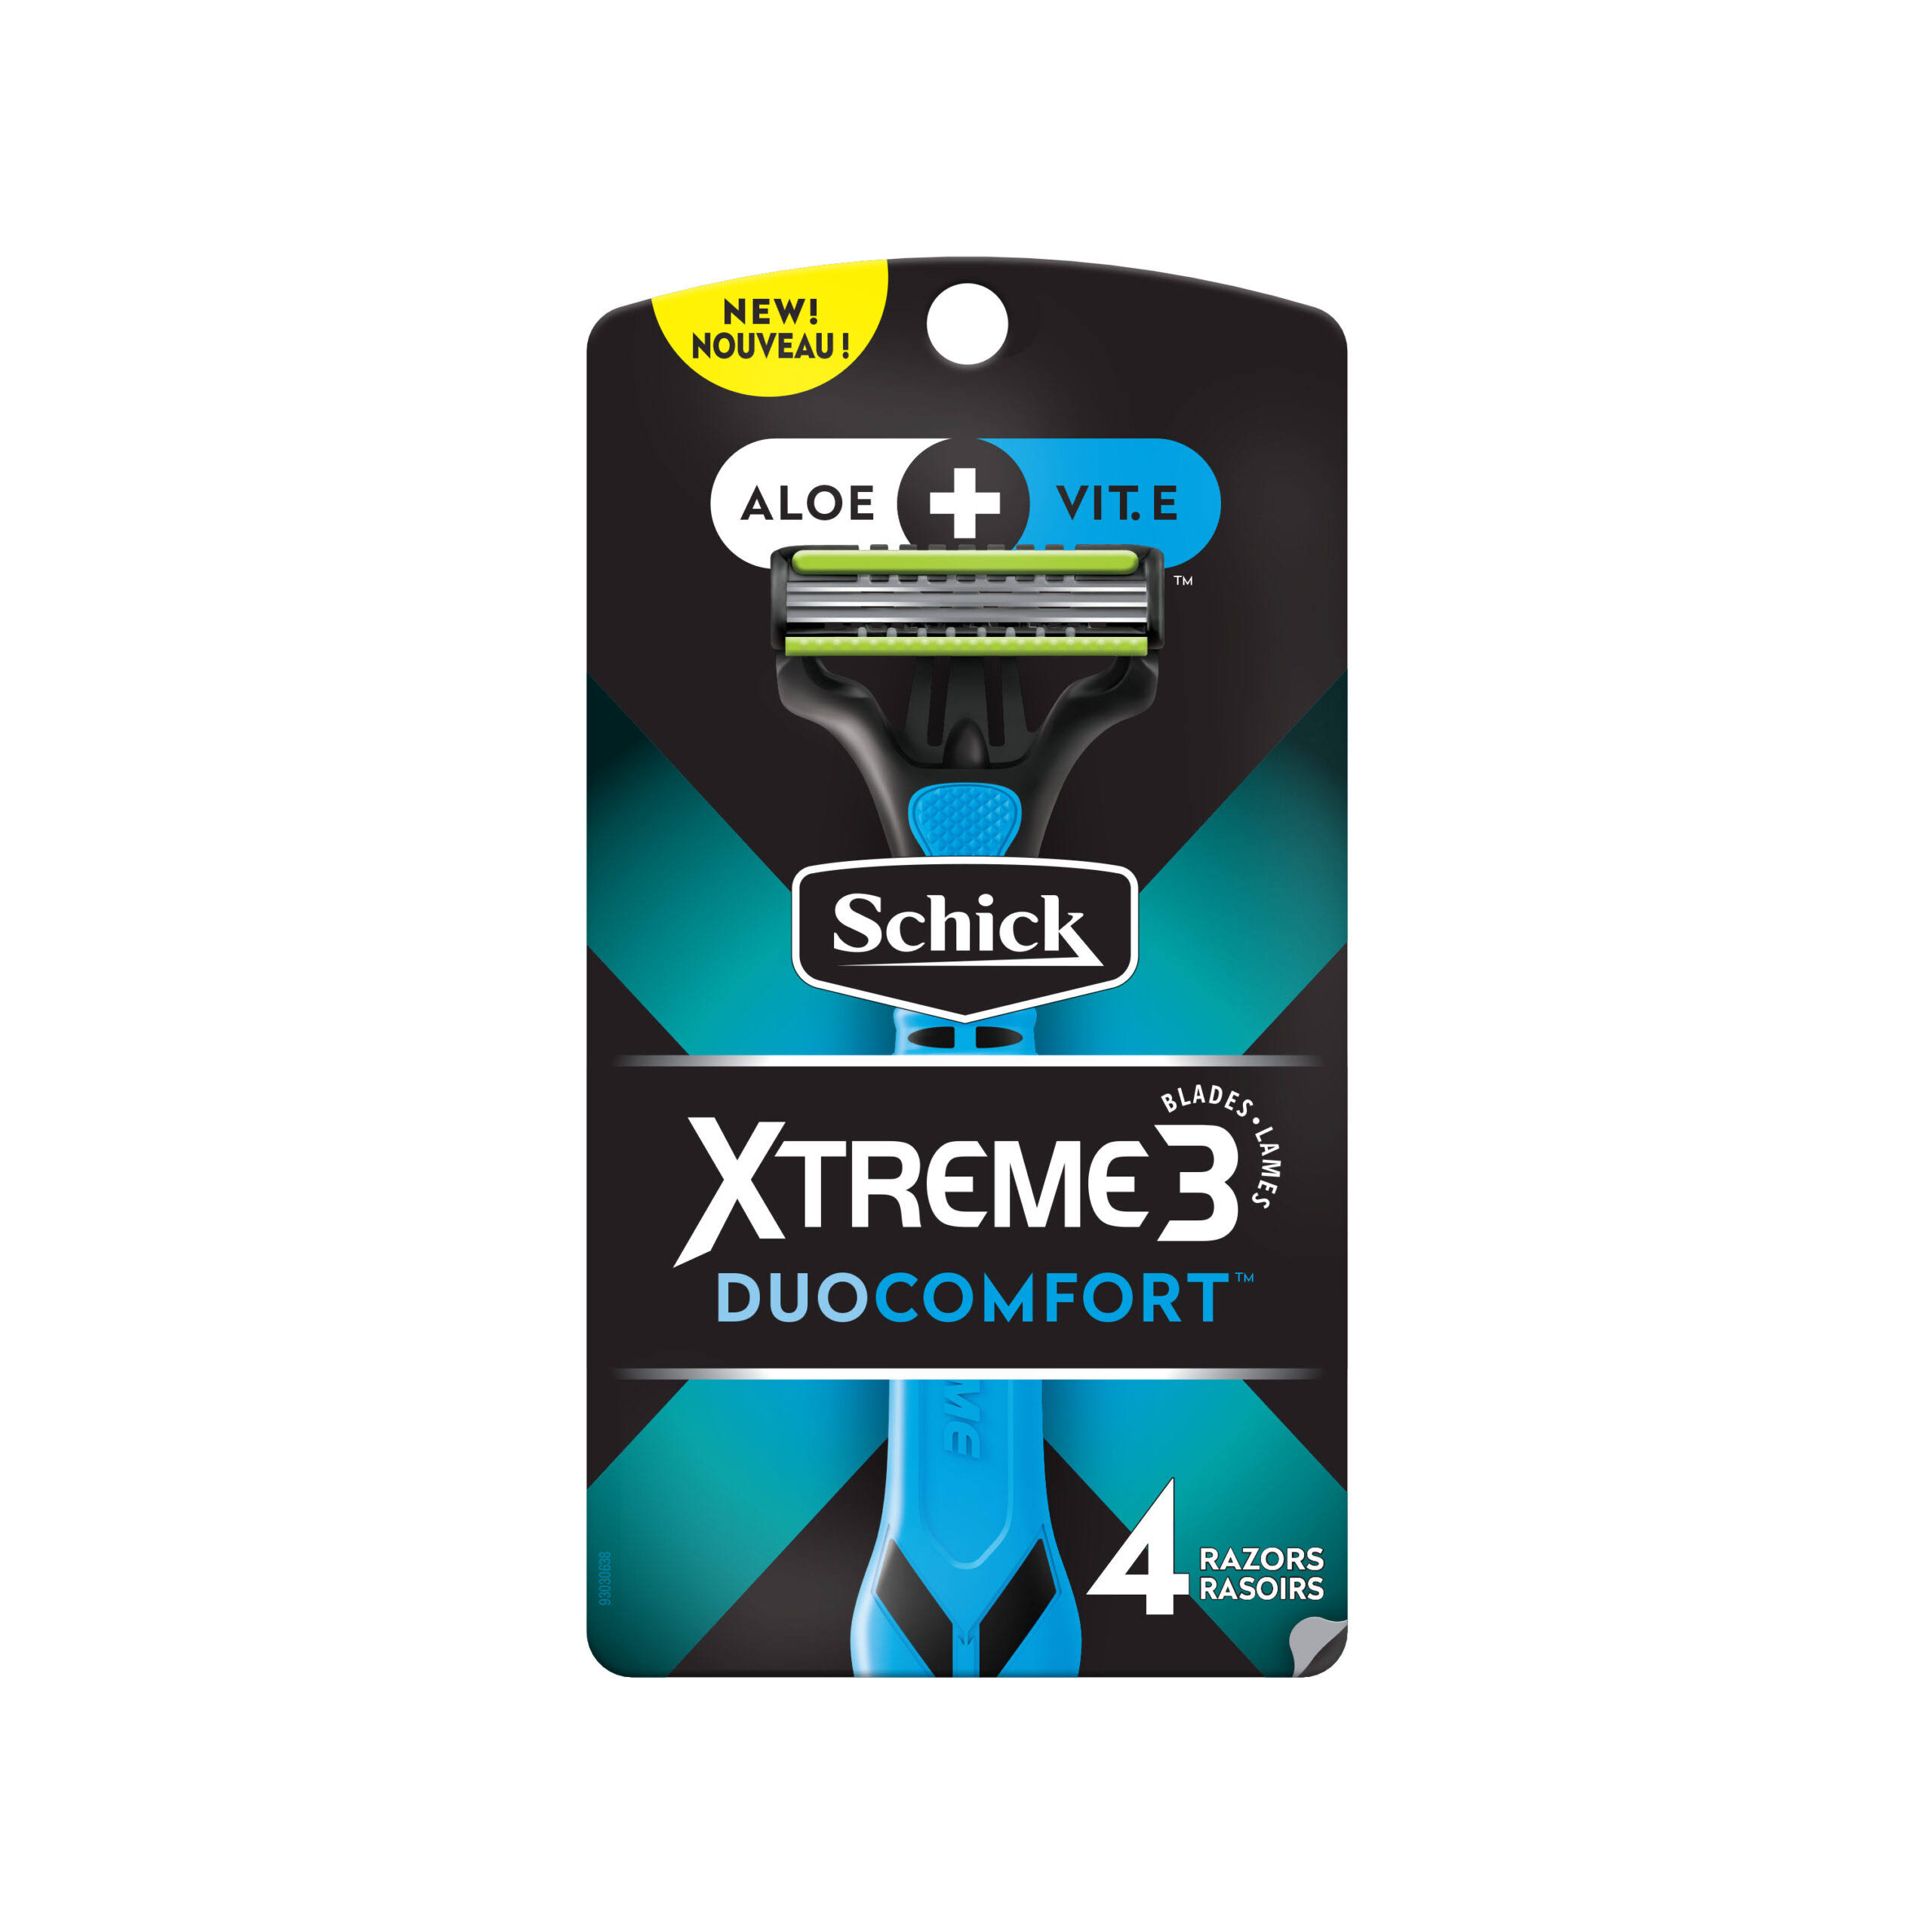 Xtreme 3 DuoComfort Men Disposable Razors